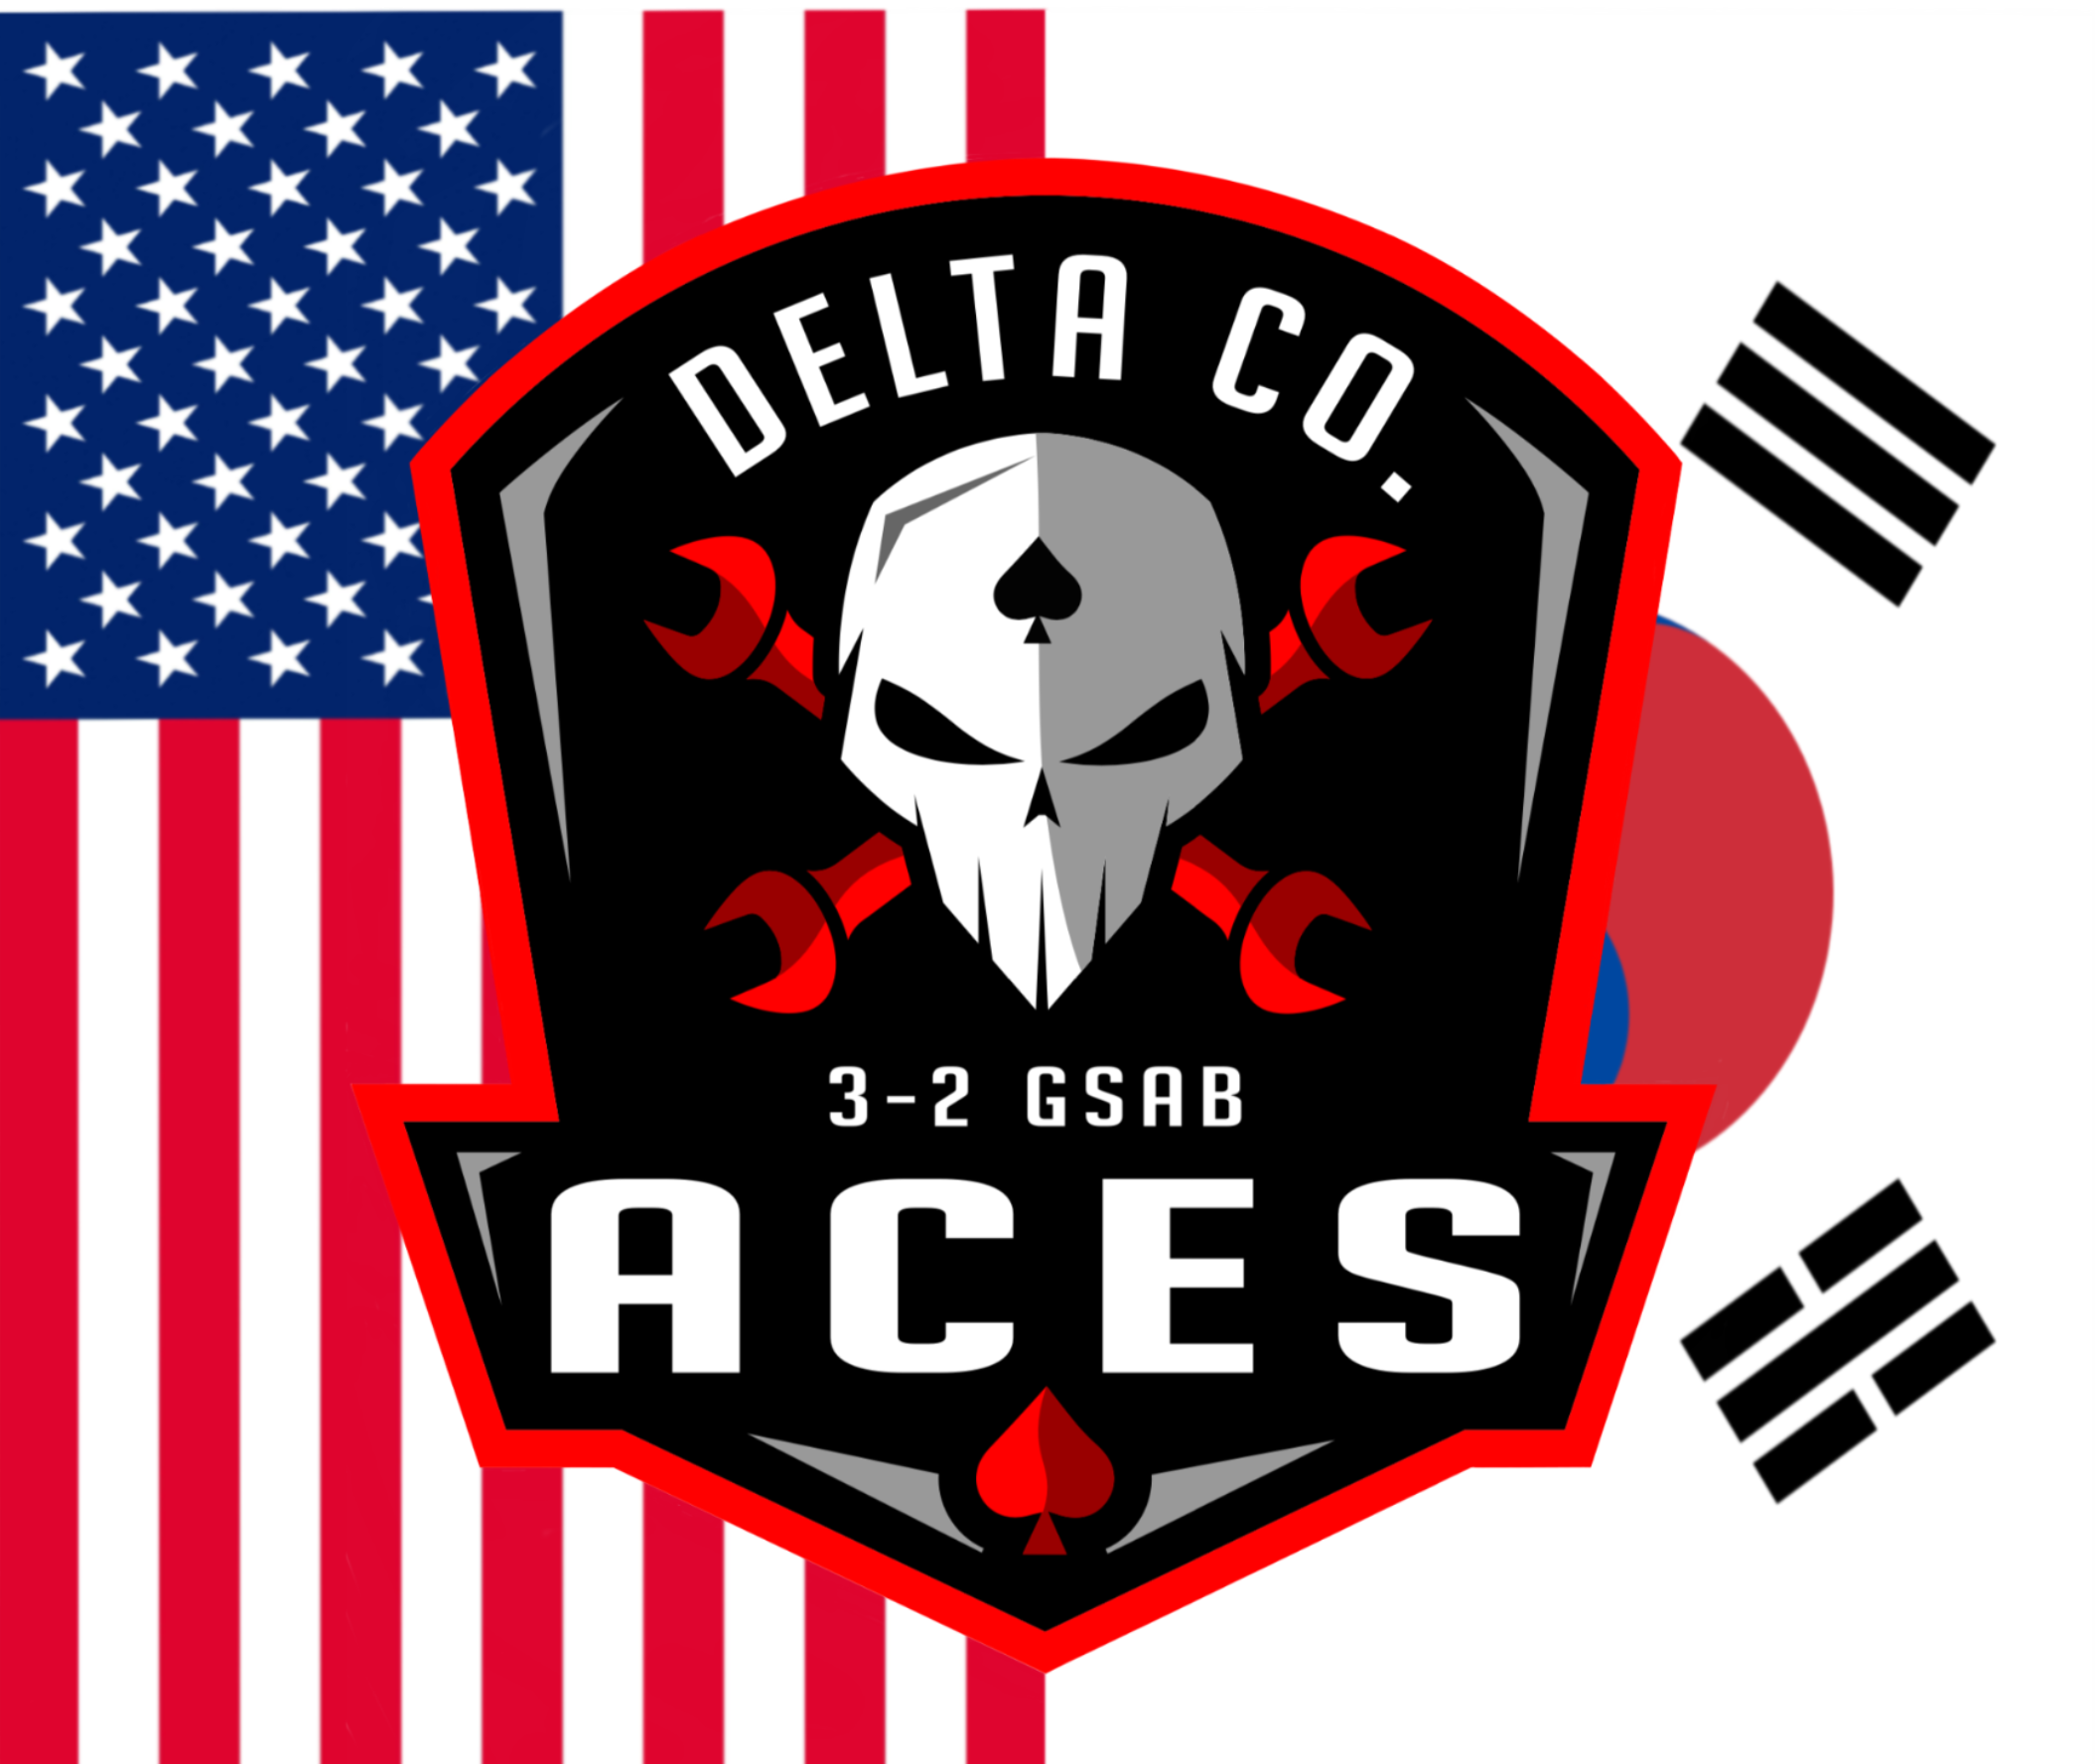 D Co, 3-2 GSAB "Aces"